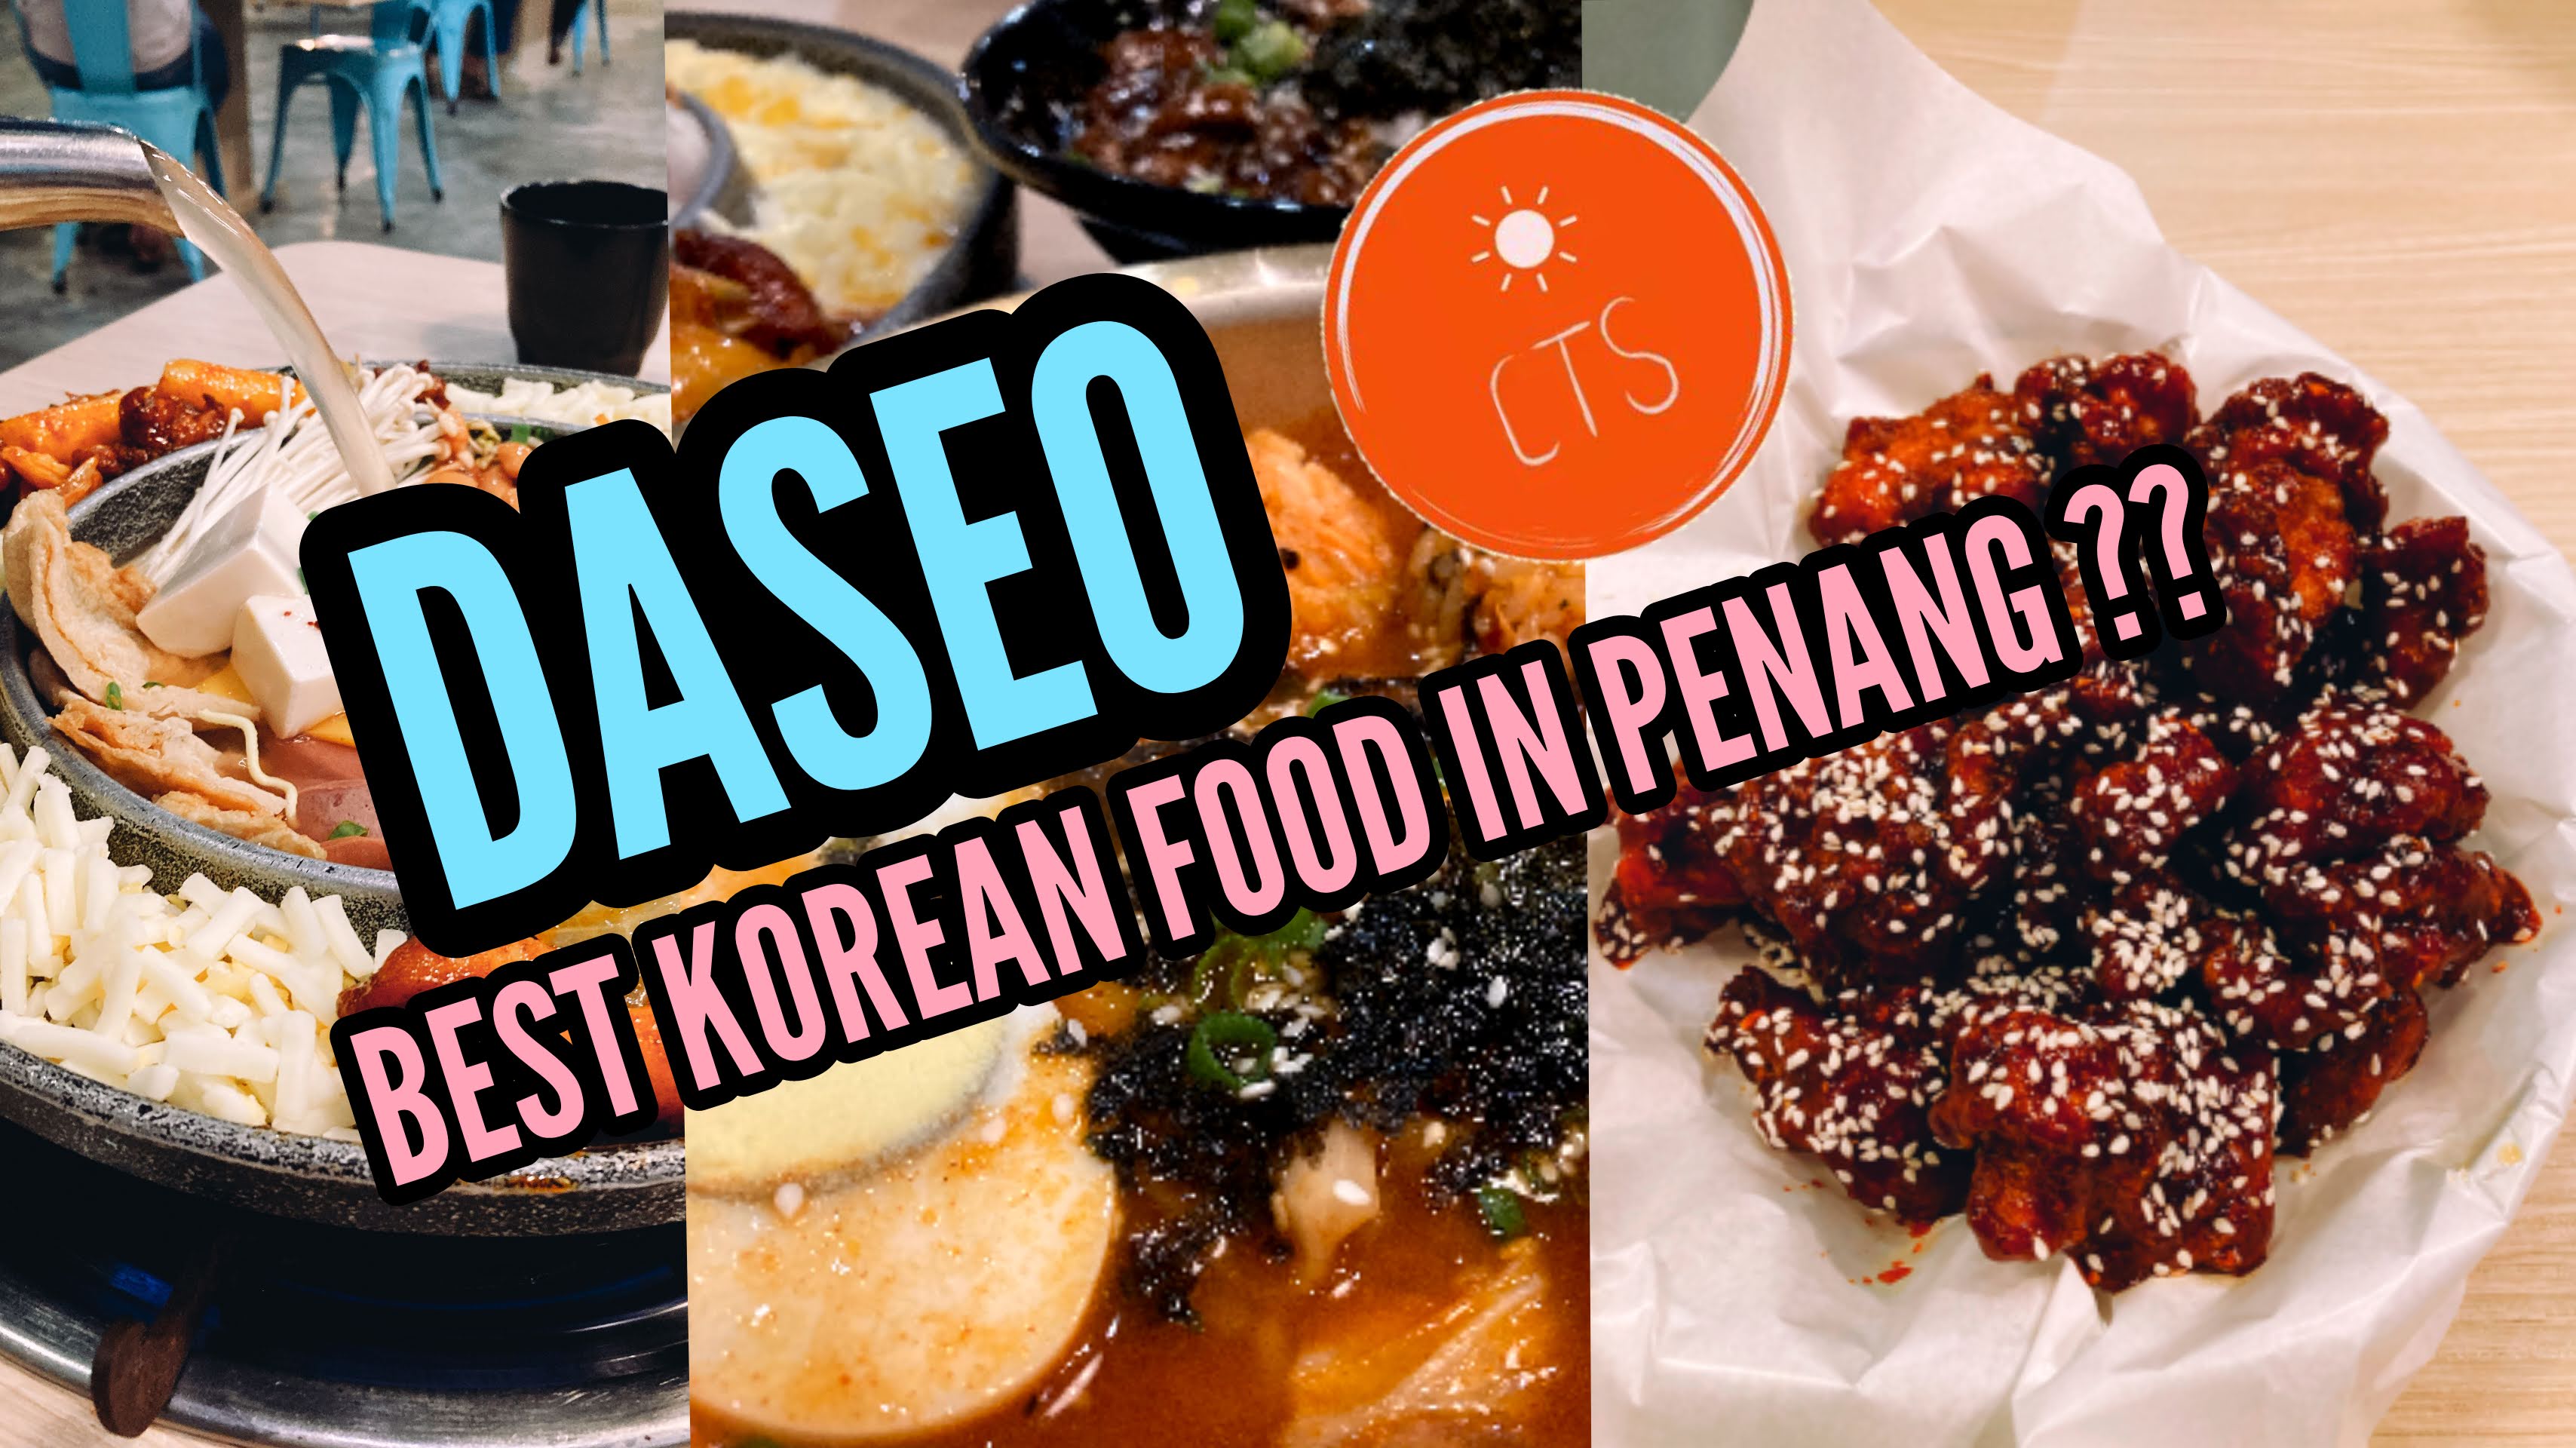 Tempat Makan Best Di Penang Korean Food Restaurant Daseo Antara Yang Terbaik Di Penang Chasing The Sun Travel Blog